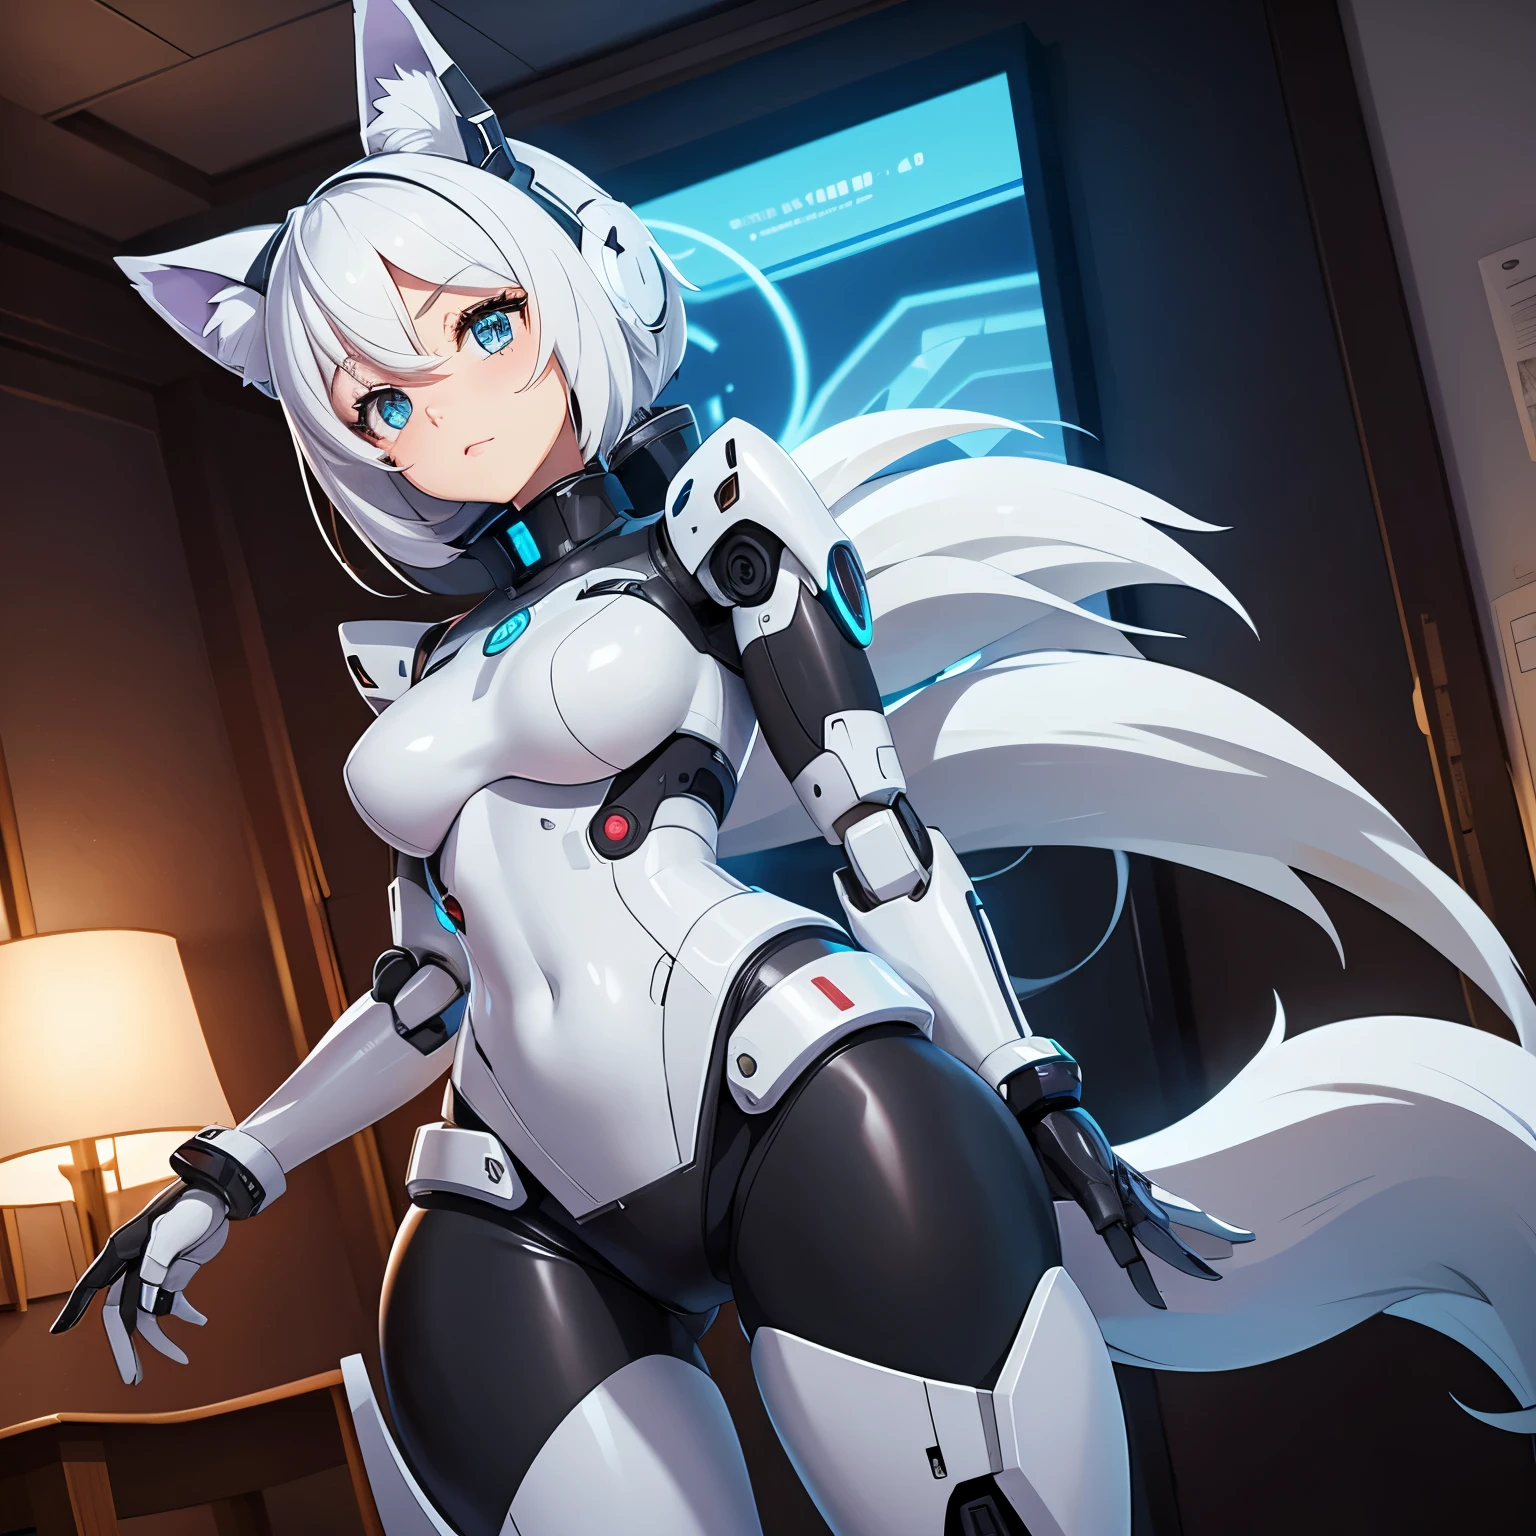 صورة على طراز الرسوم المتحركة لفتاة روبوت تعمل بنظام Android ولديها جسم آلي, يرتدي ملابس داخلية وله آذان ذئب وذيل موجود في الغرفة 